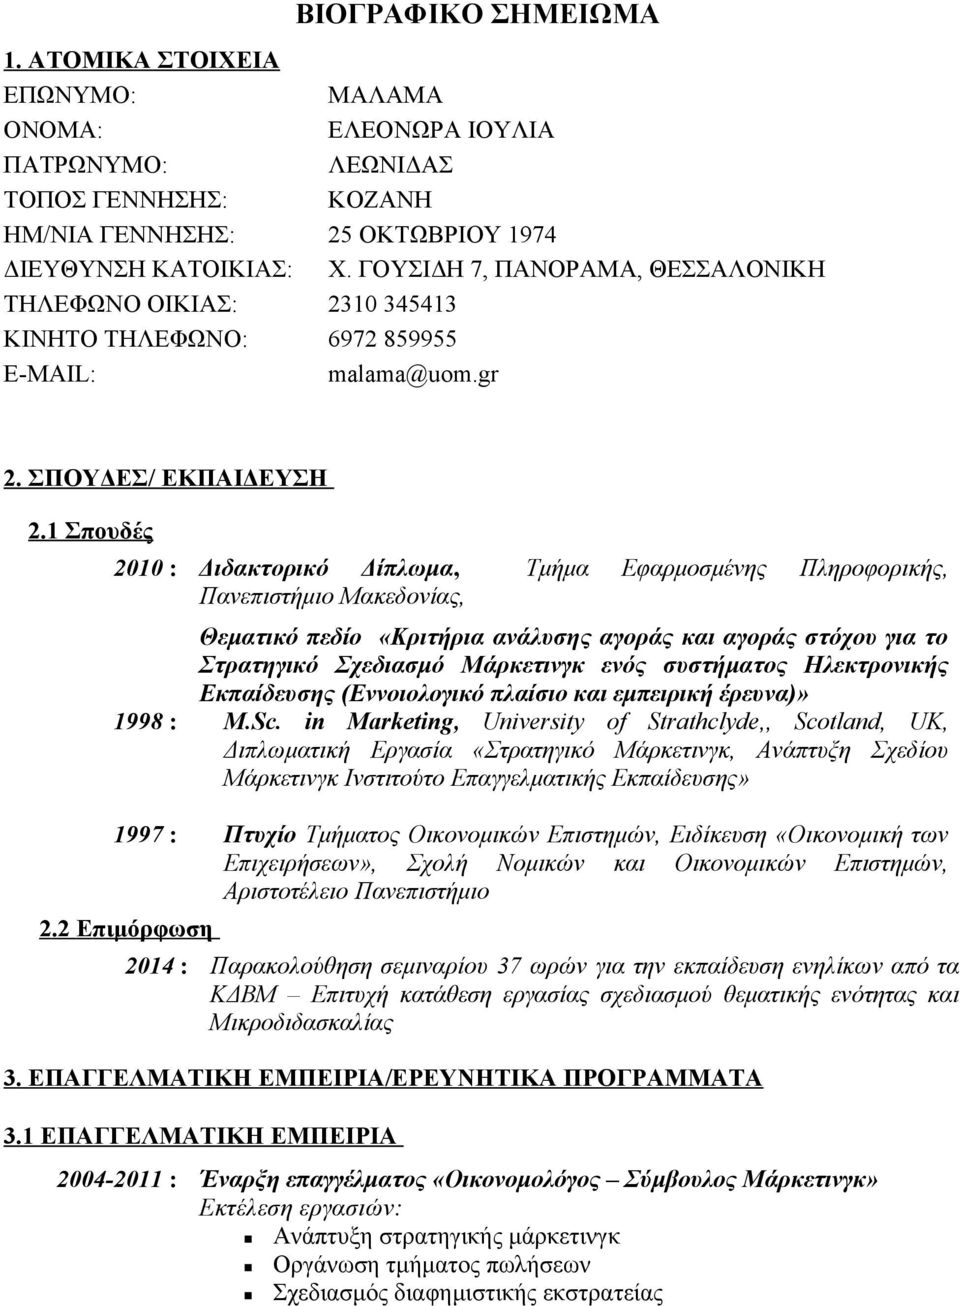 1 Σπουδές 2010 : Διδακτορικό Δίπλωμα, Τμήμα Εφαρμοσμένης Πληροφορικής, Πανεπιστήμιο Μακεδονίας, Θεματικό πεδίο «Κριτήρια ανάλυσης αγοράς και αγοράς στόχου για το Στρατηγικό Σχεδιασμό Μάρκετινγκ ενός